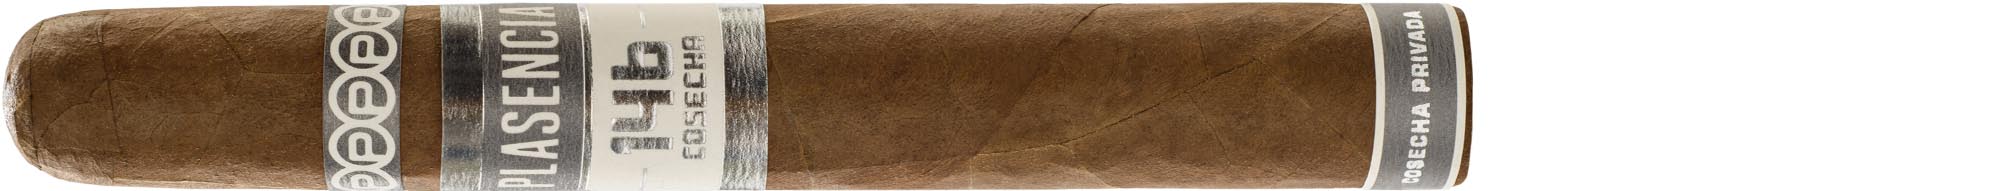 Plasencia Zigarren Cosecha 146 San Luis